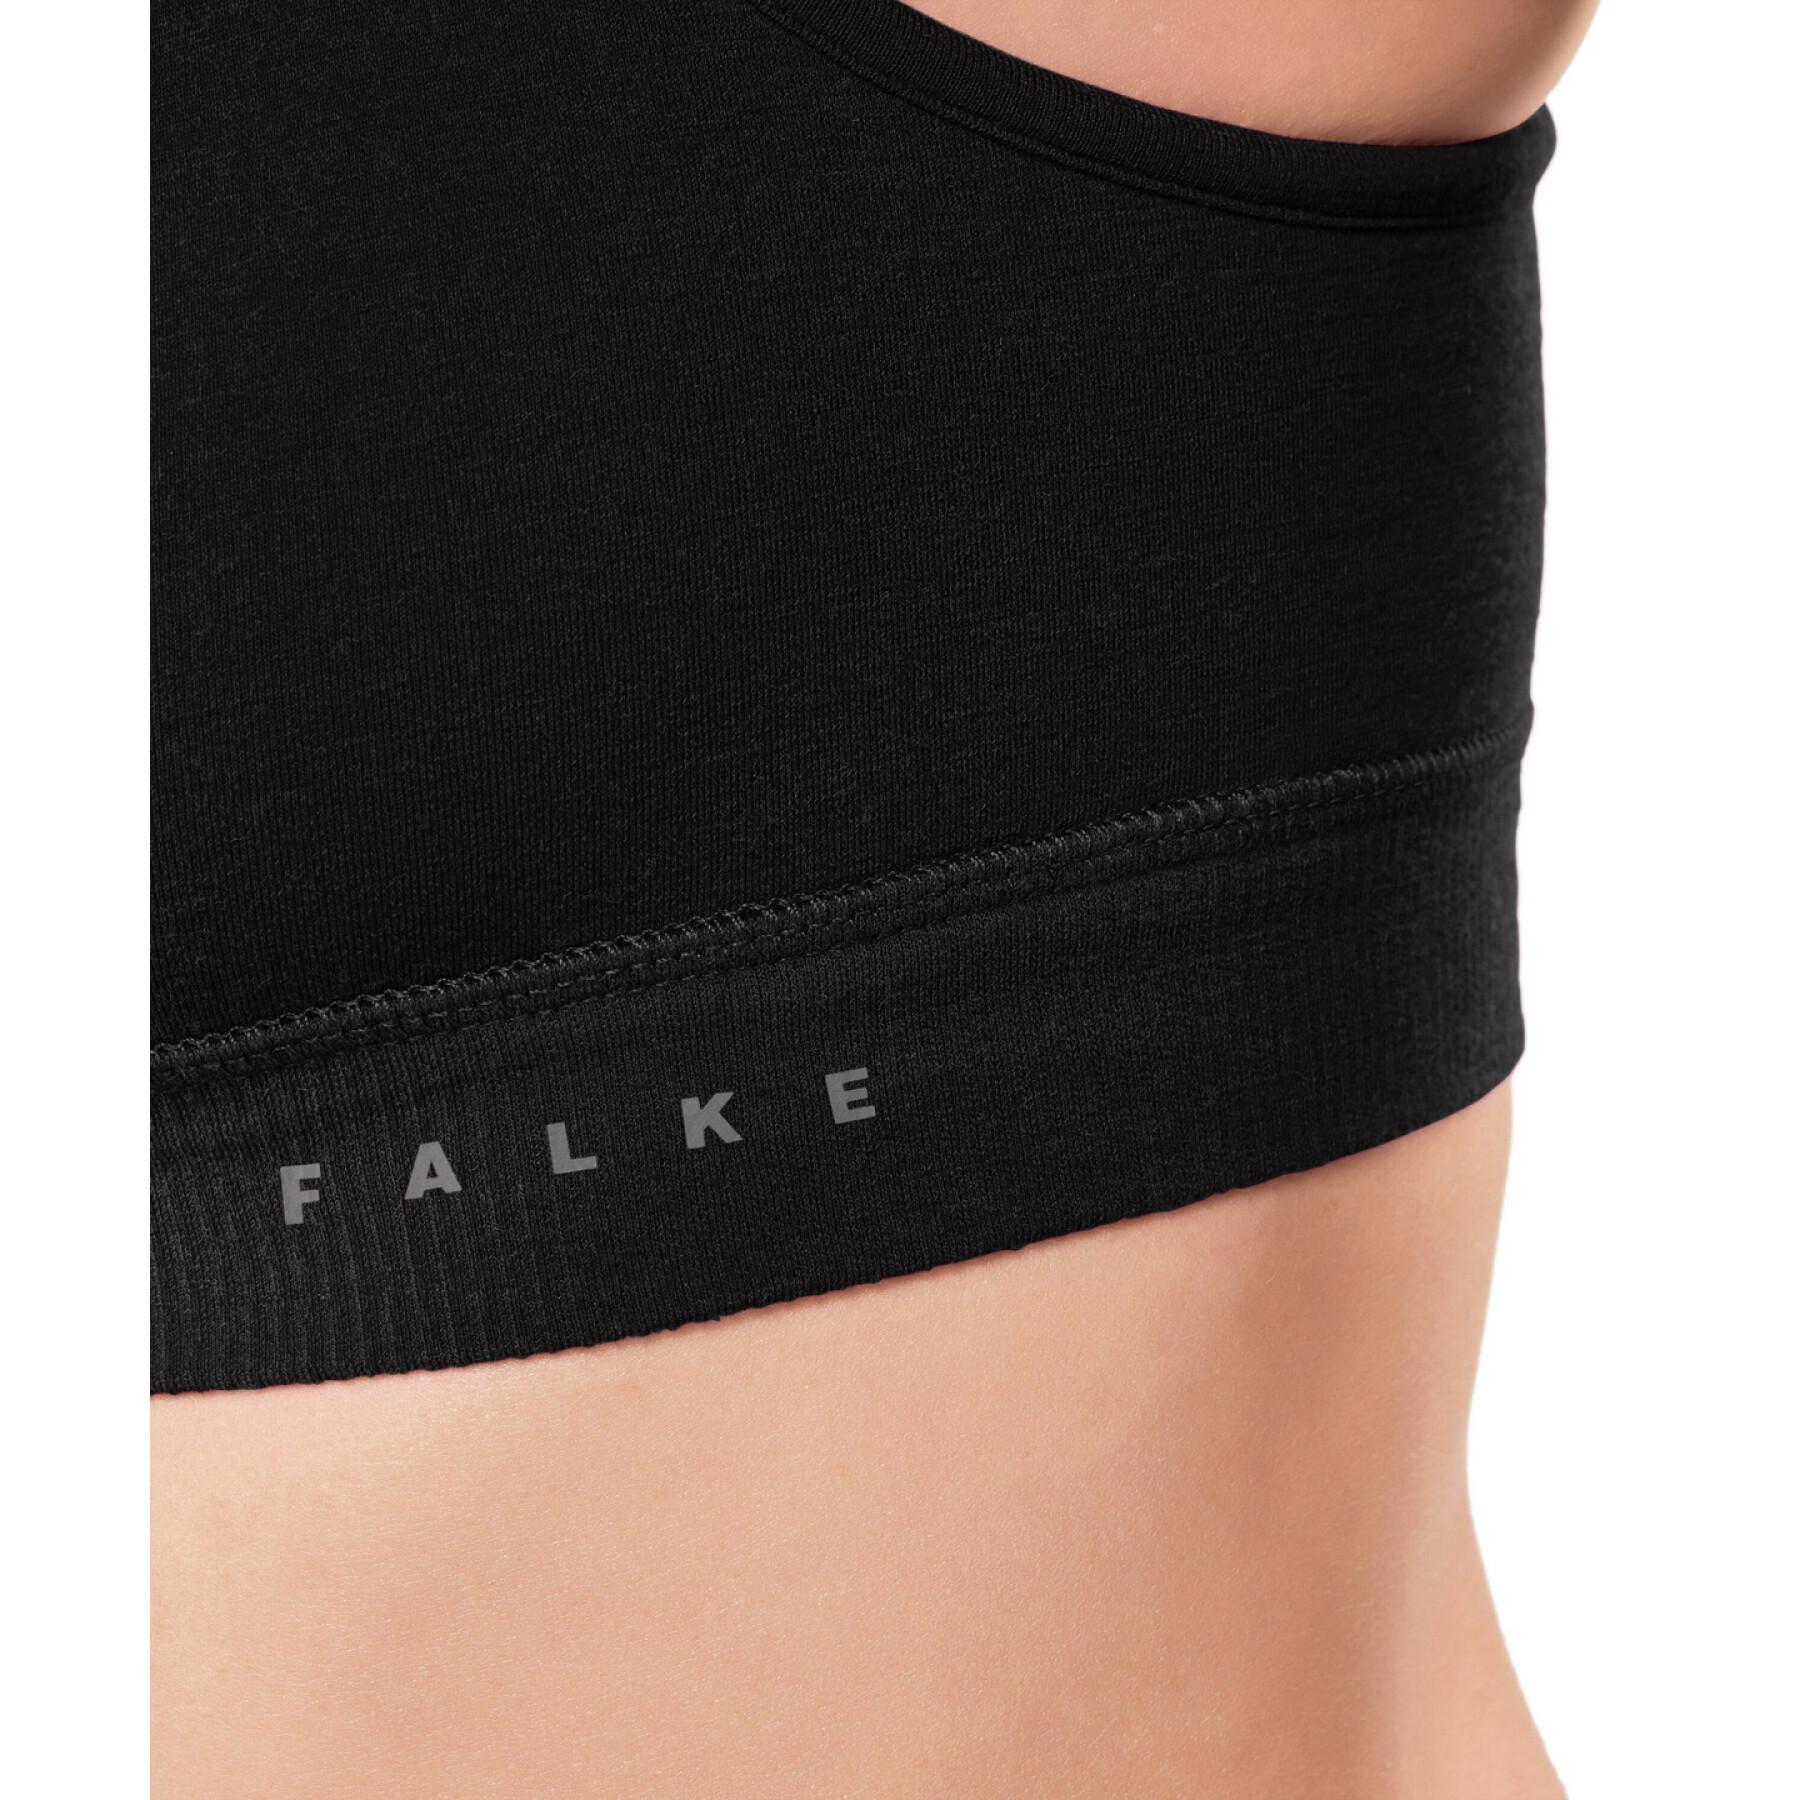 Women's bra Falke - Sports bras - Women's wear - Slocog wear